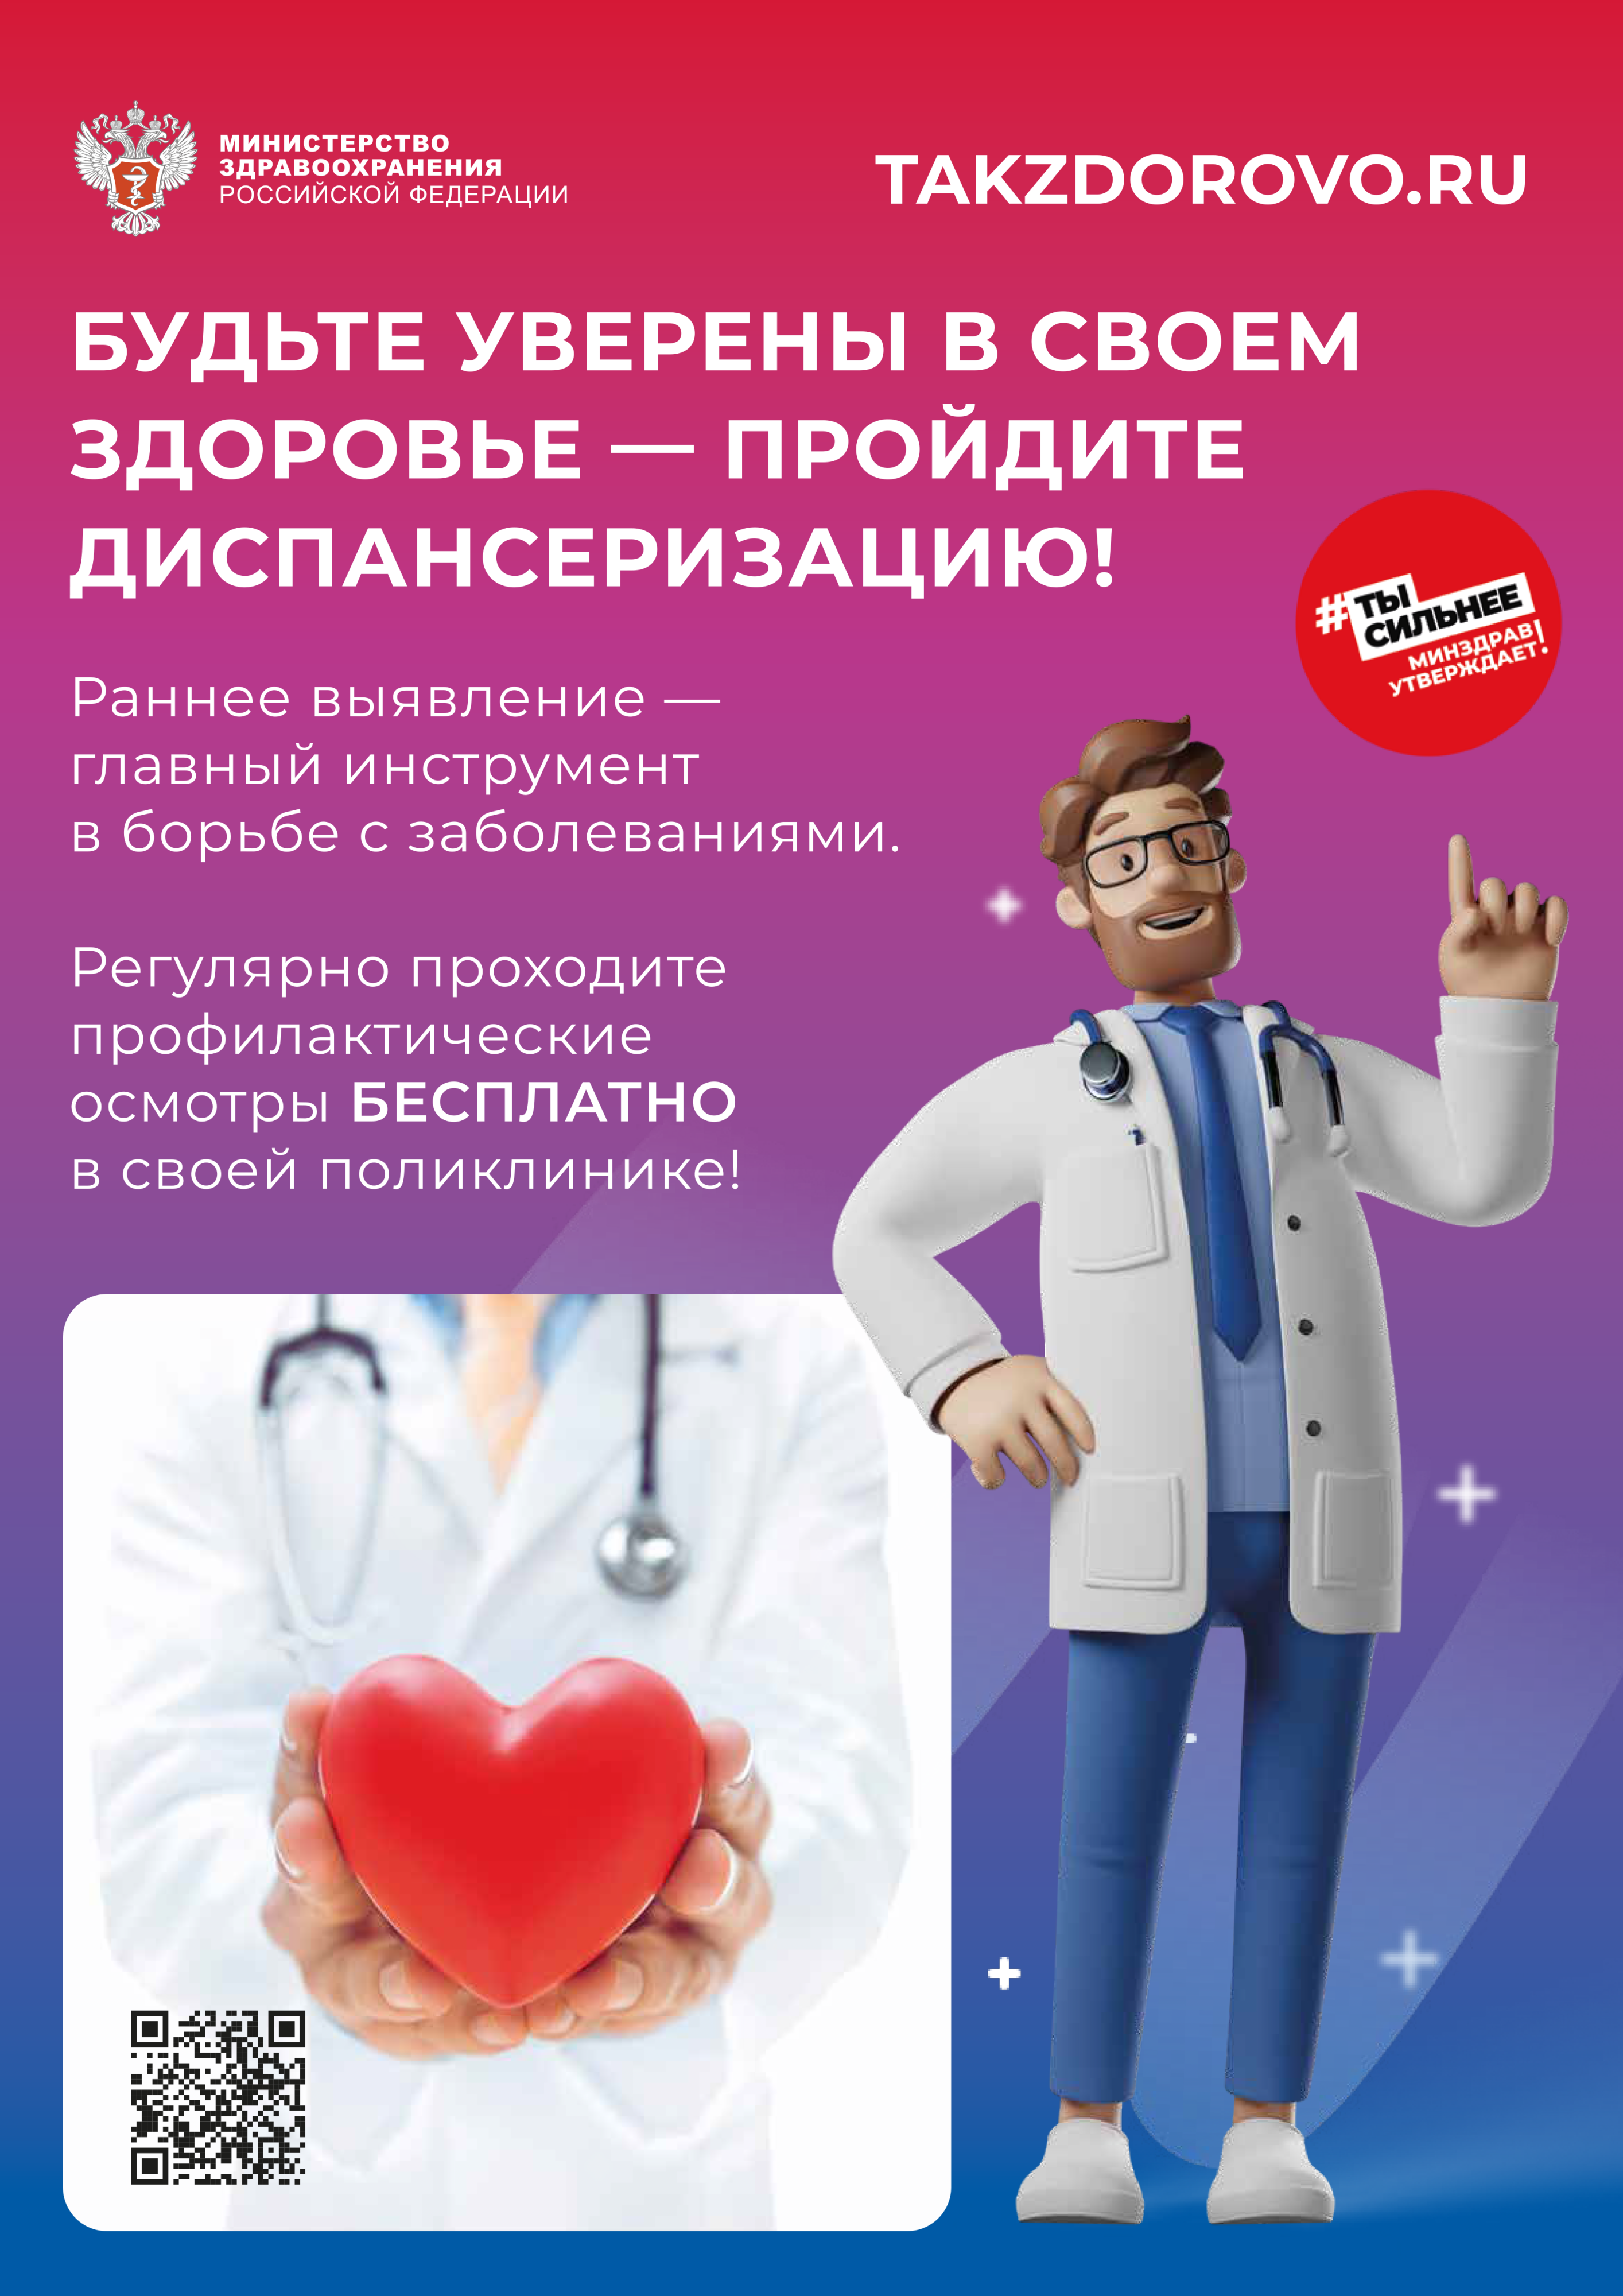 takzdorovo.ru министерство здравоохранения будьте уверены в своем здоровье